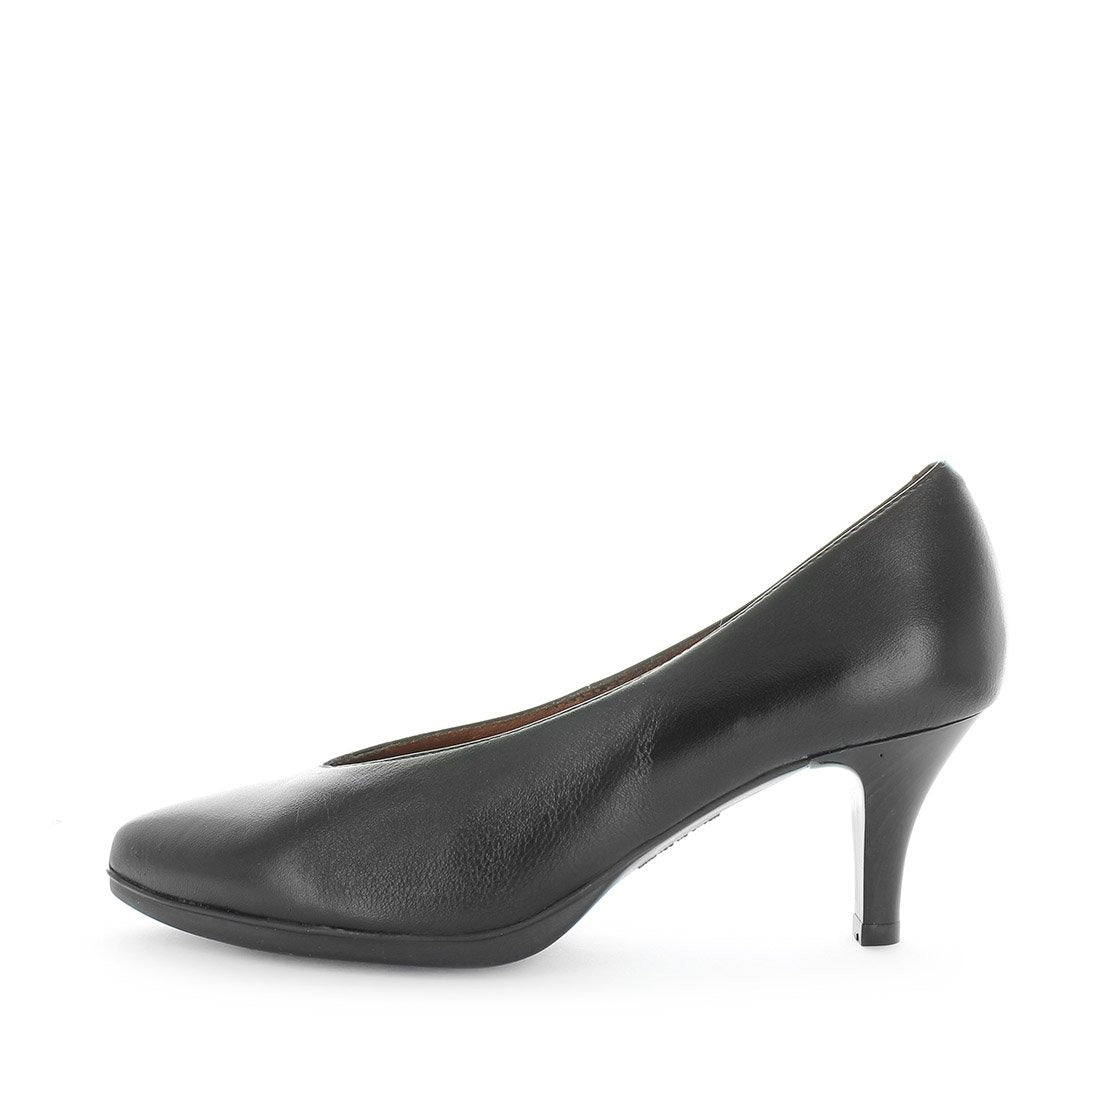 DAKORI by DESIREE - iShoes - Sale, Women's Shoes, Women's Shoes: Heels - FOOTWEAR-FOOTWEAR